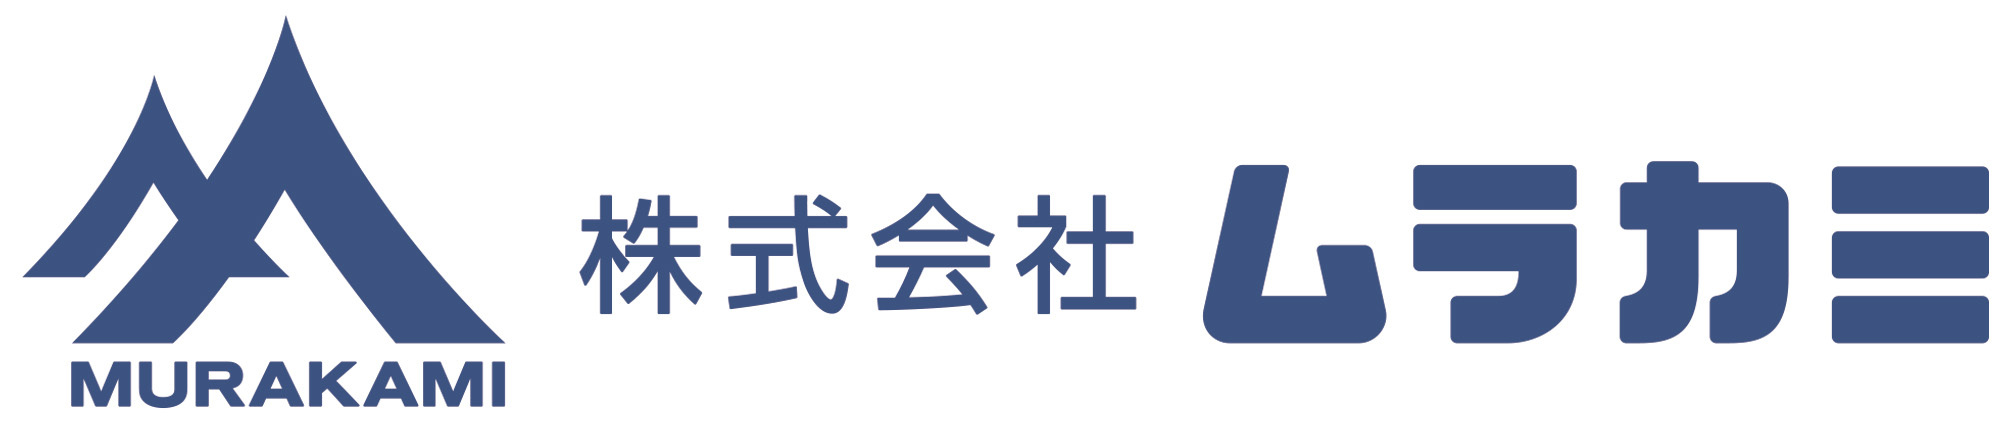 logo_murakami.jpg